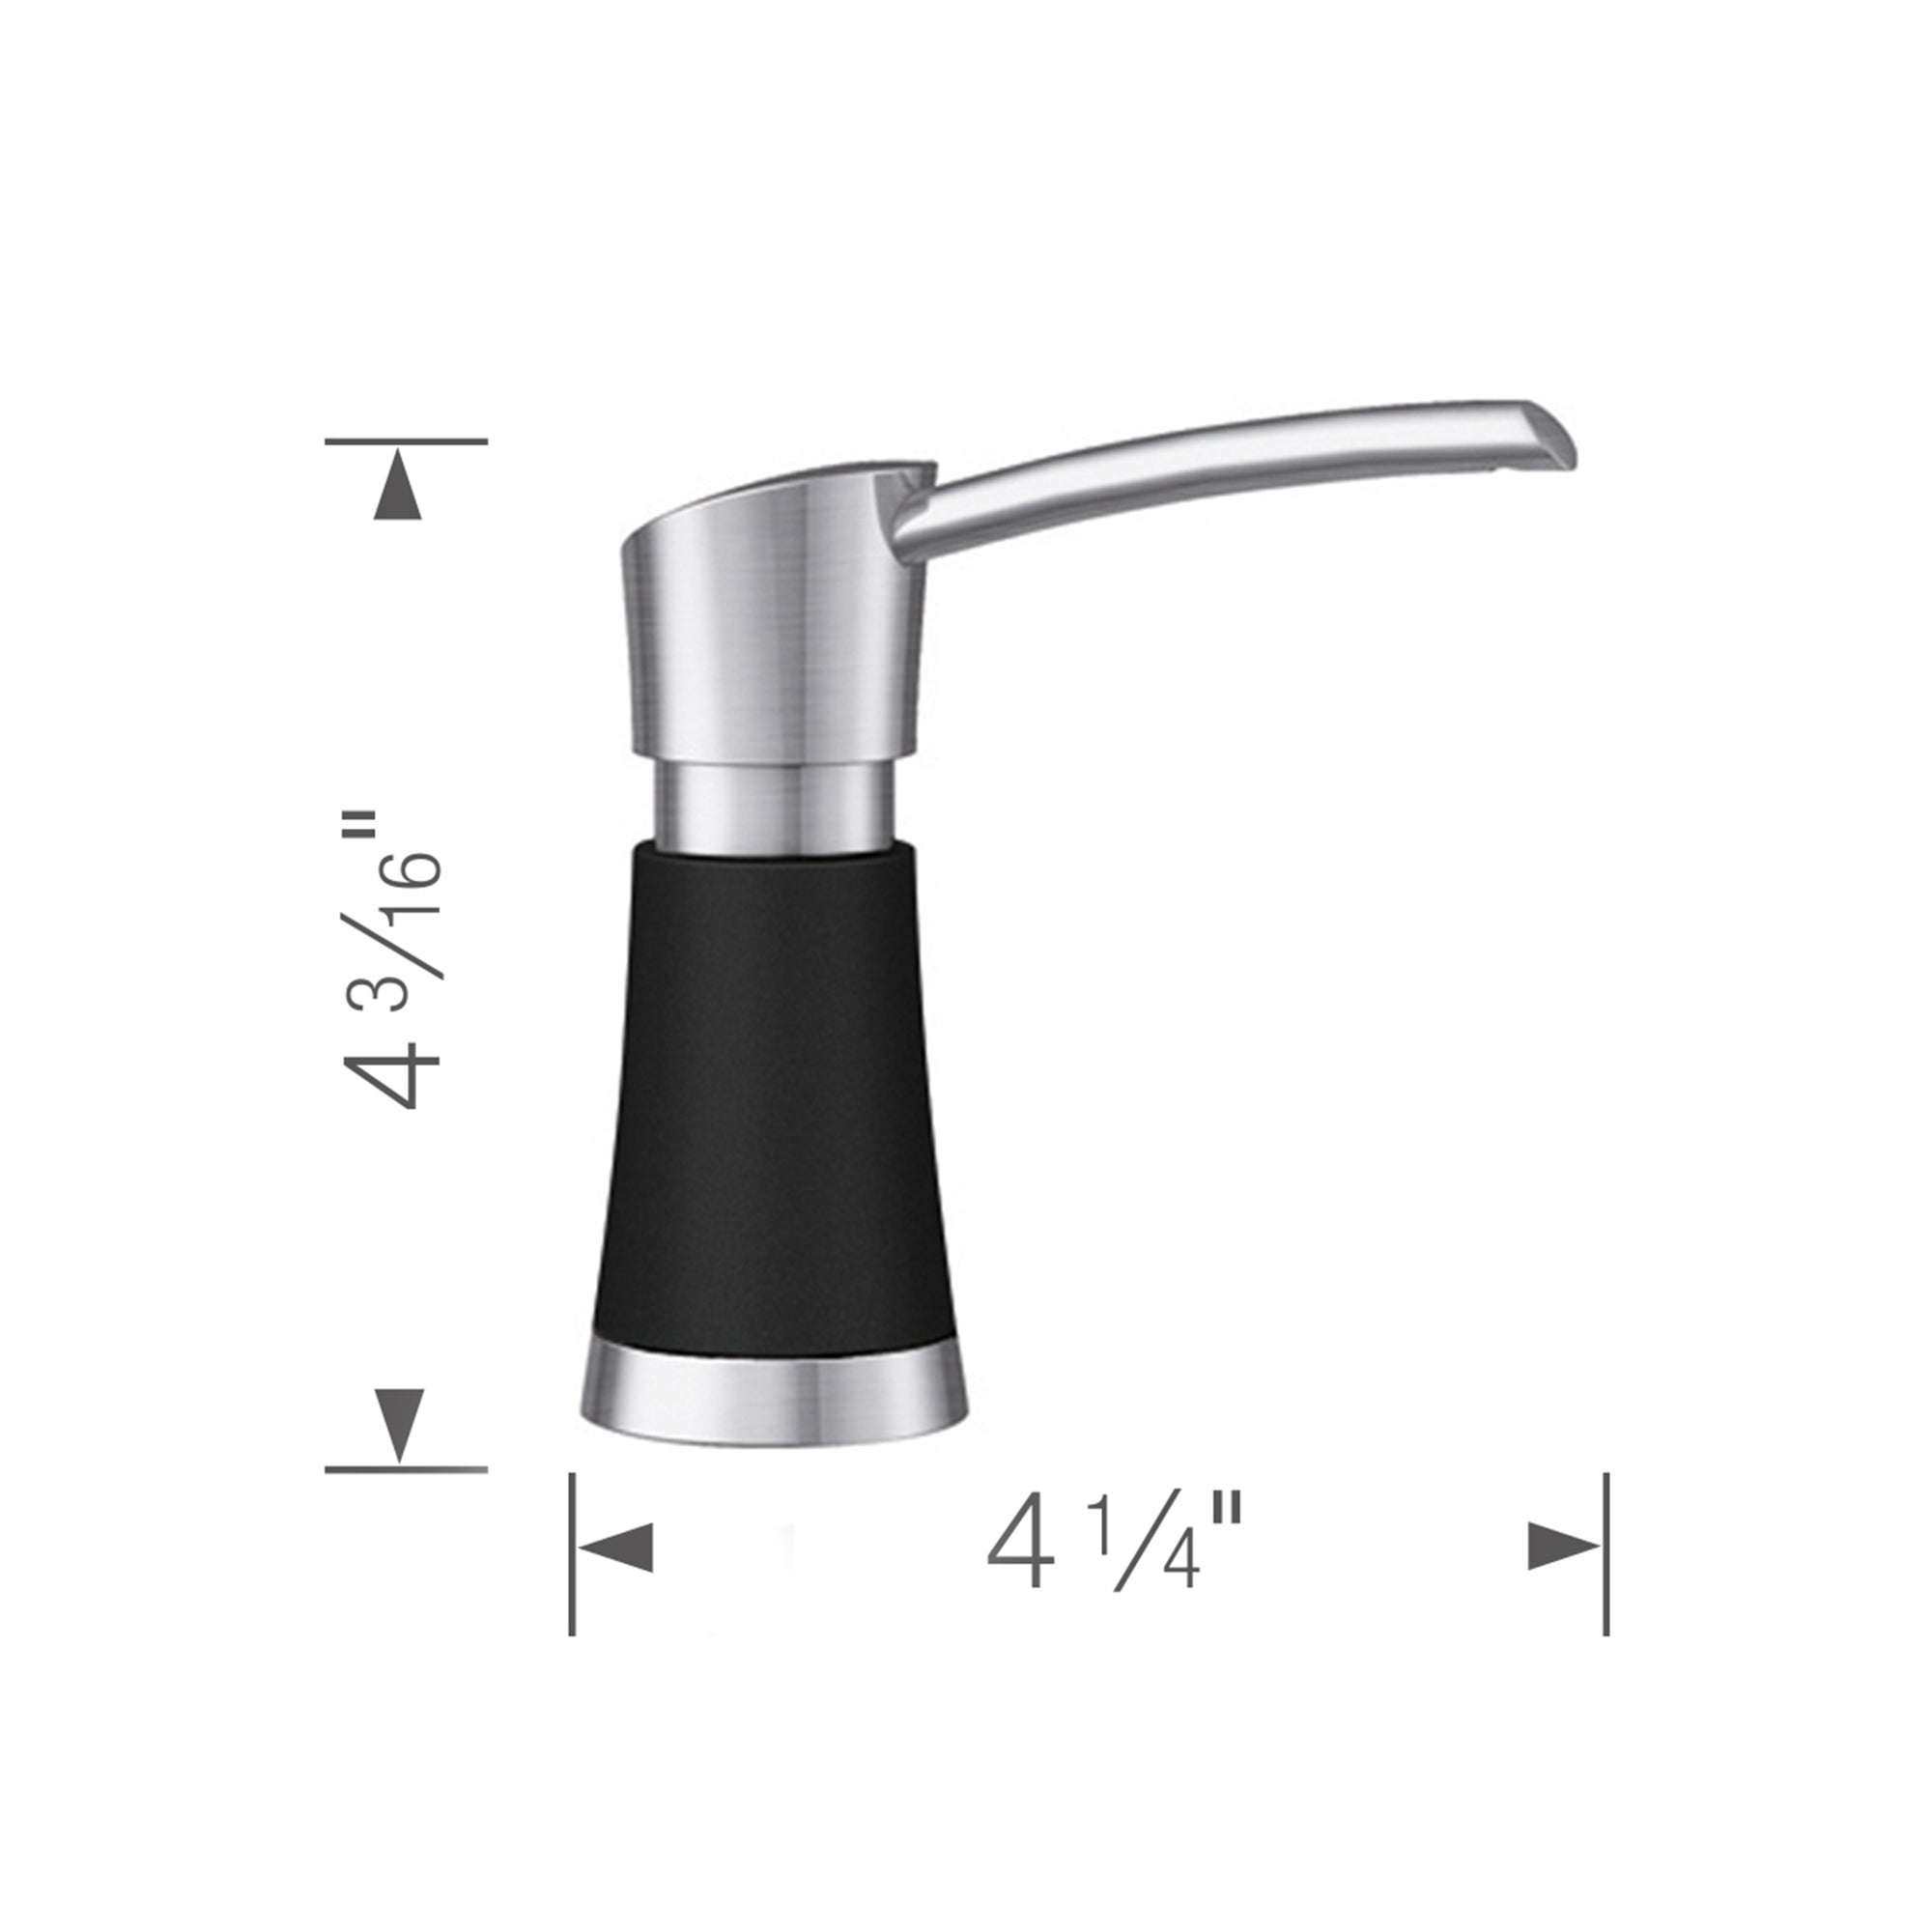 Blanco 442902- ARTONA Soap Dispenser, PVD Steel/Coal Black, (370 ml) 12.5 fl oz. - FaucetExpress.ca